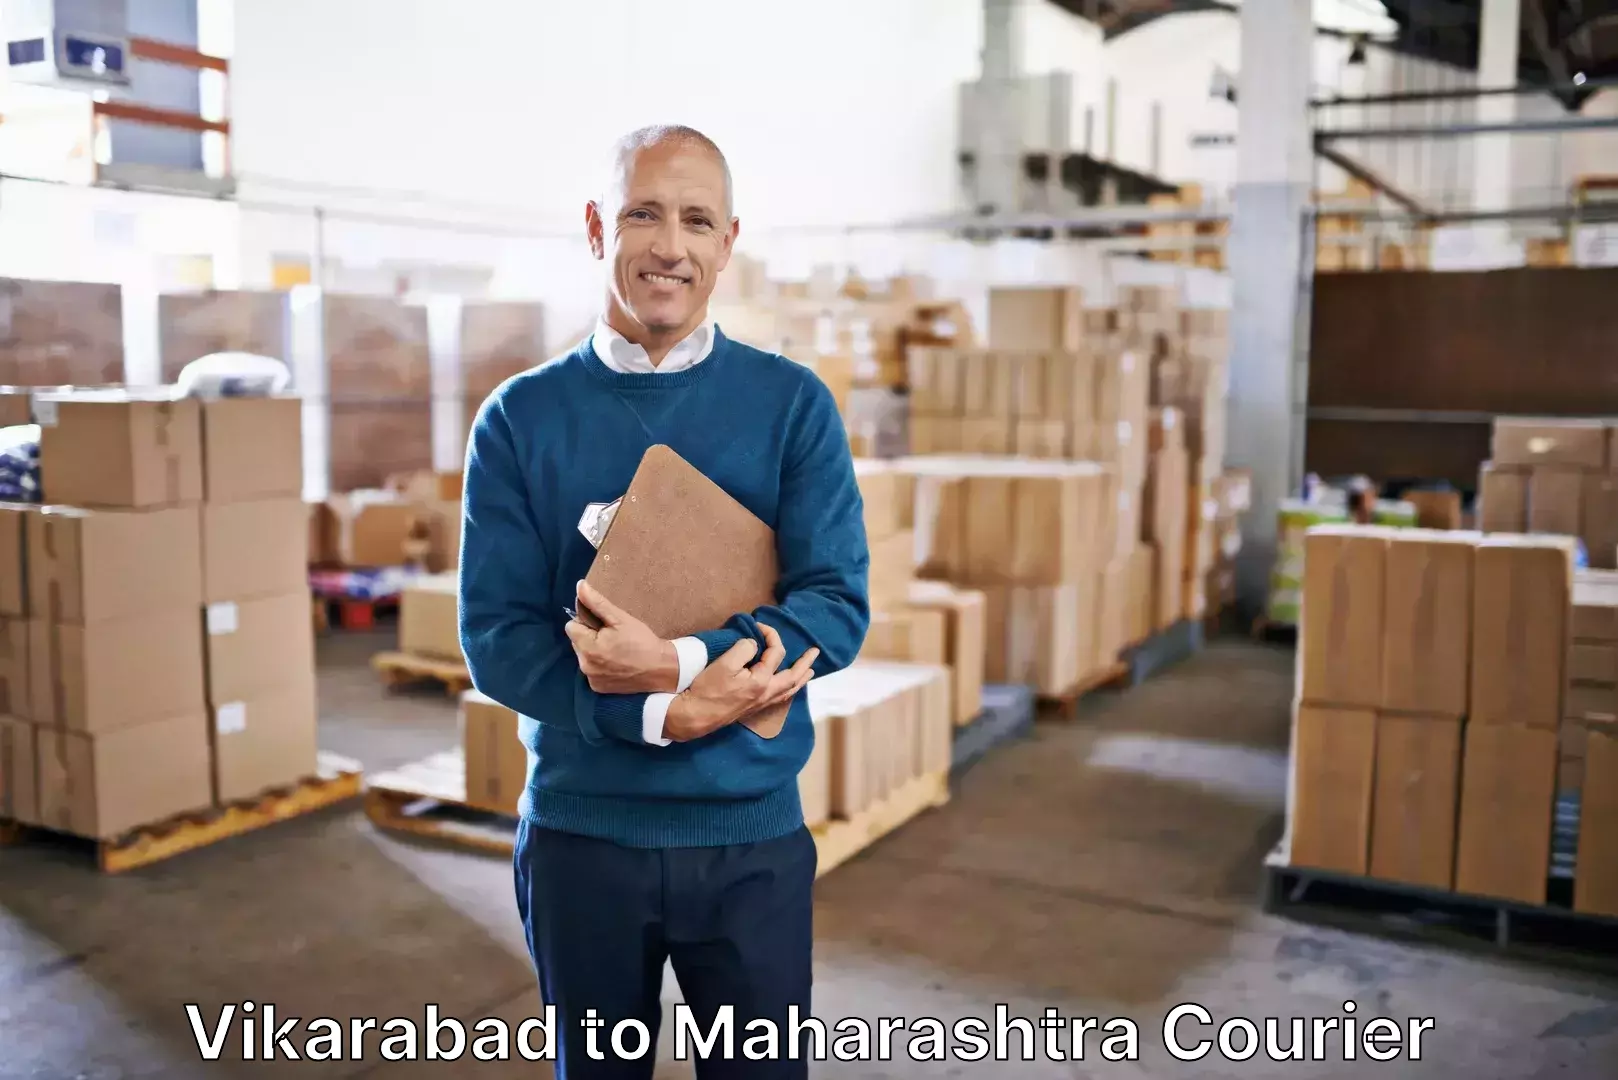 Luggage delivery app Vikarabad to Maharashtra